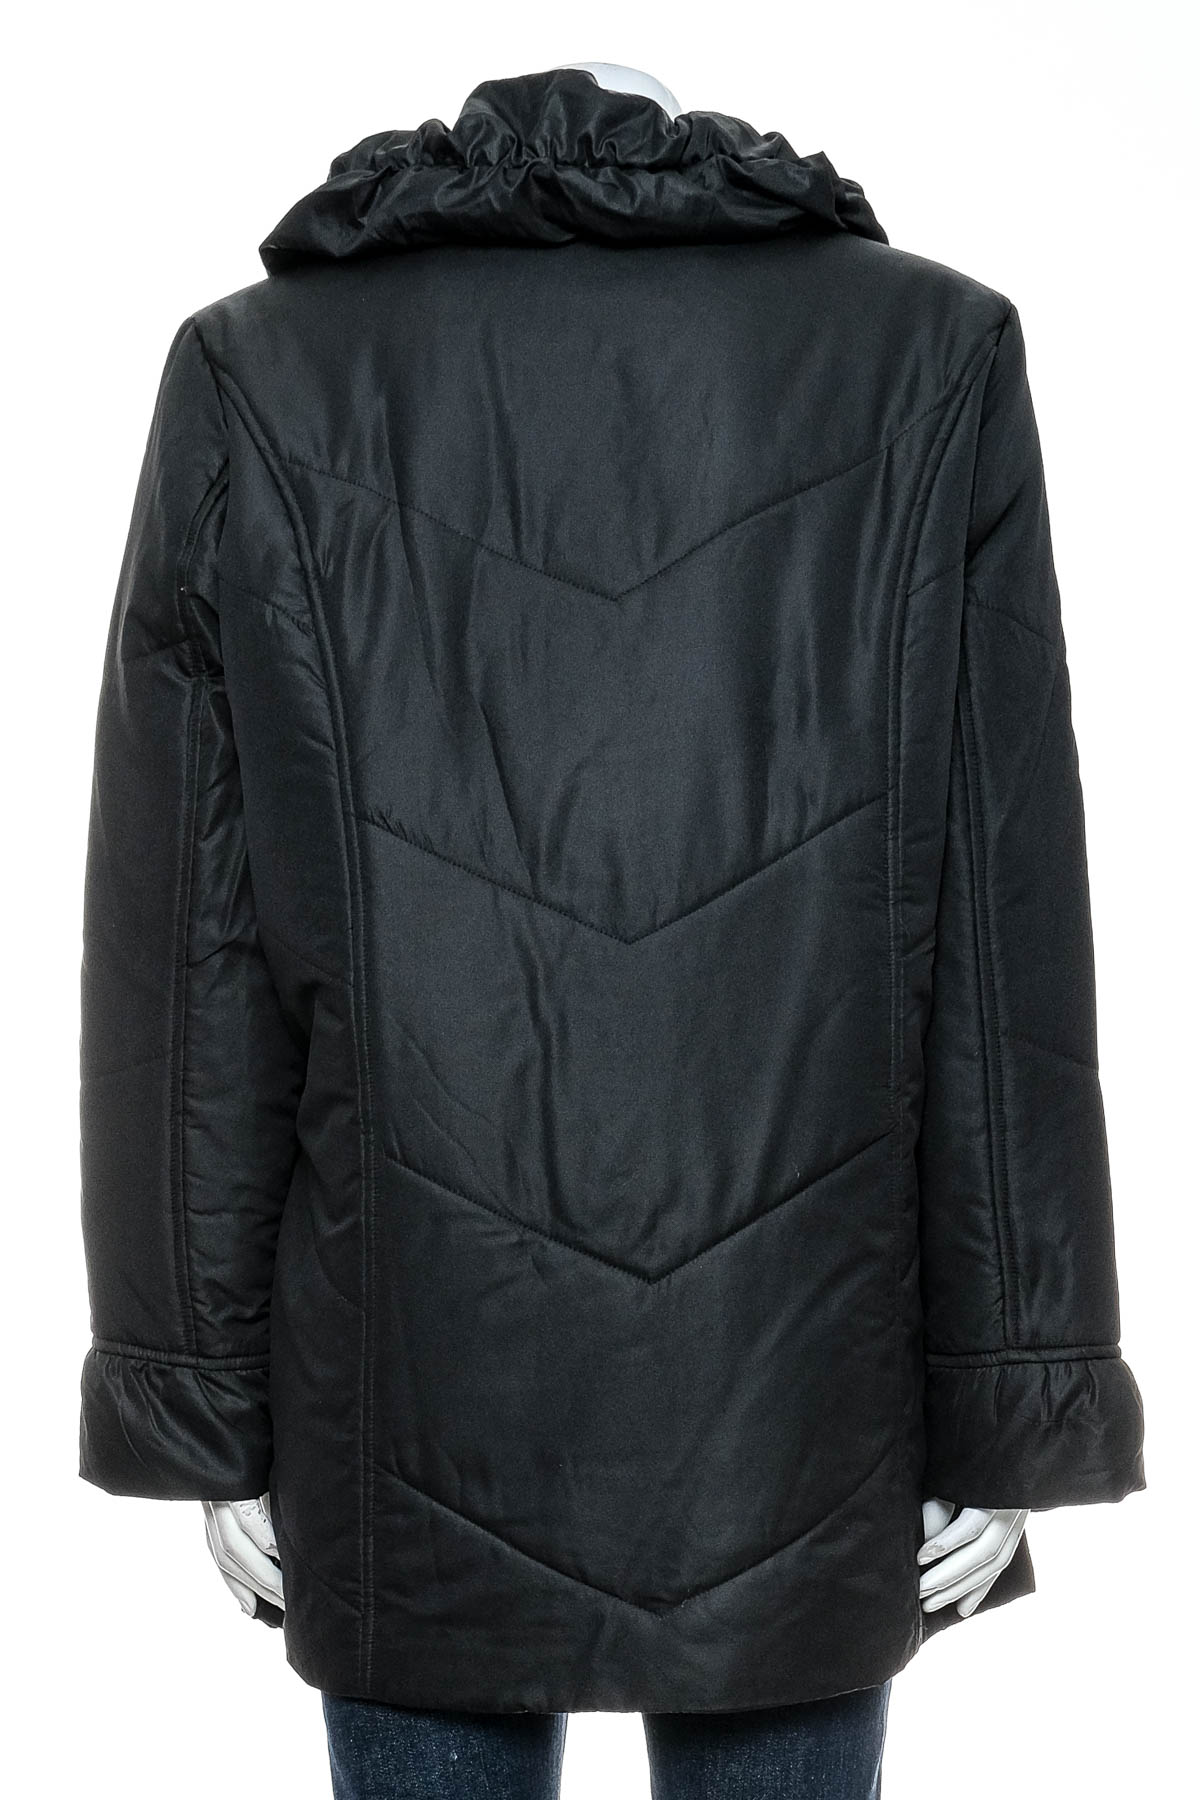 Female jacket - AproductZ - 1